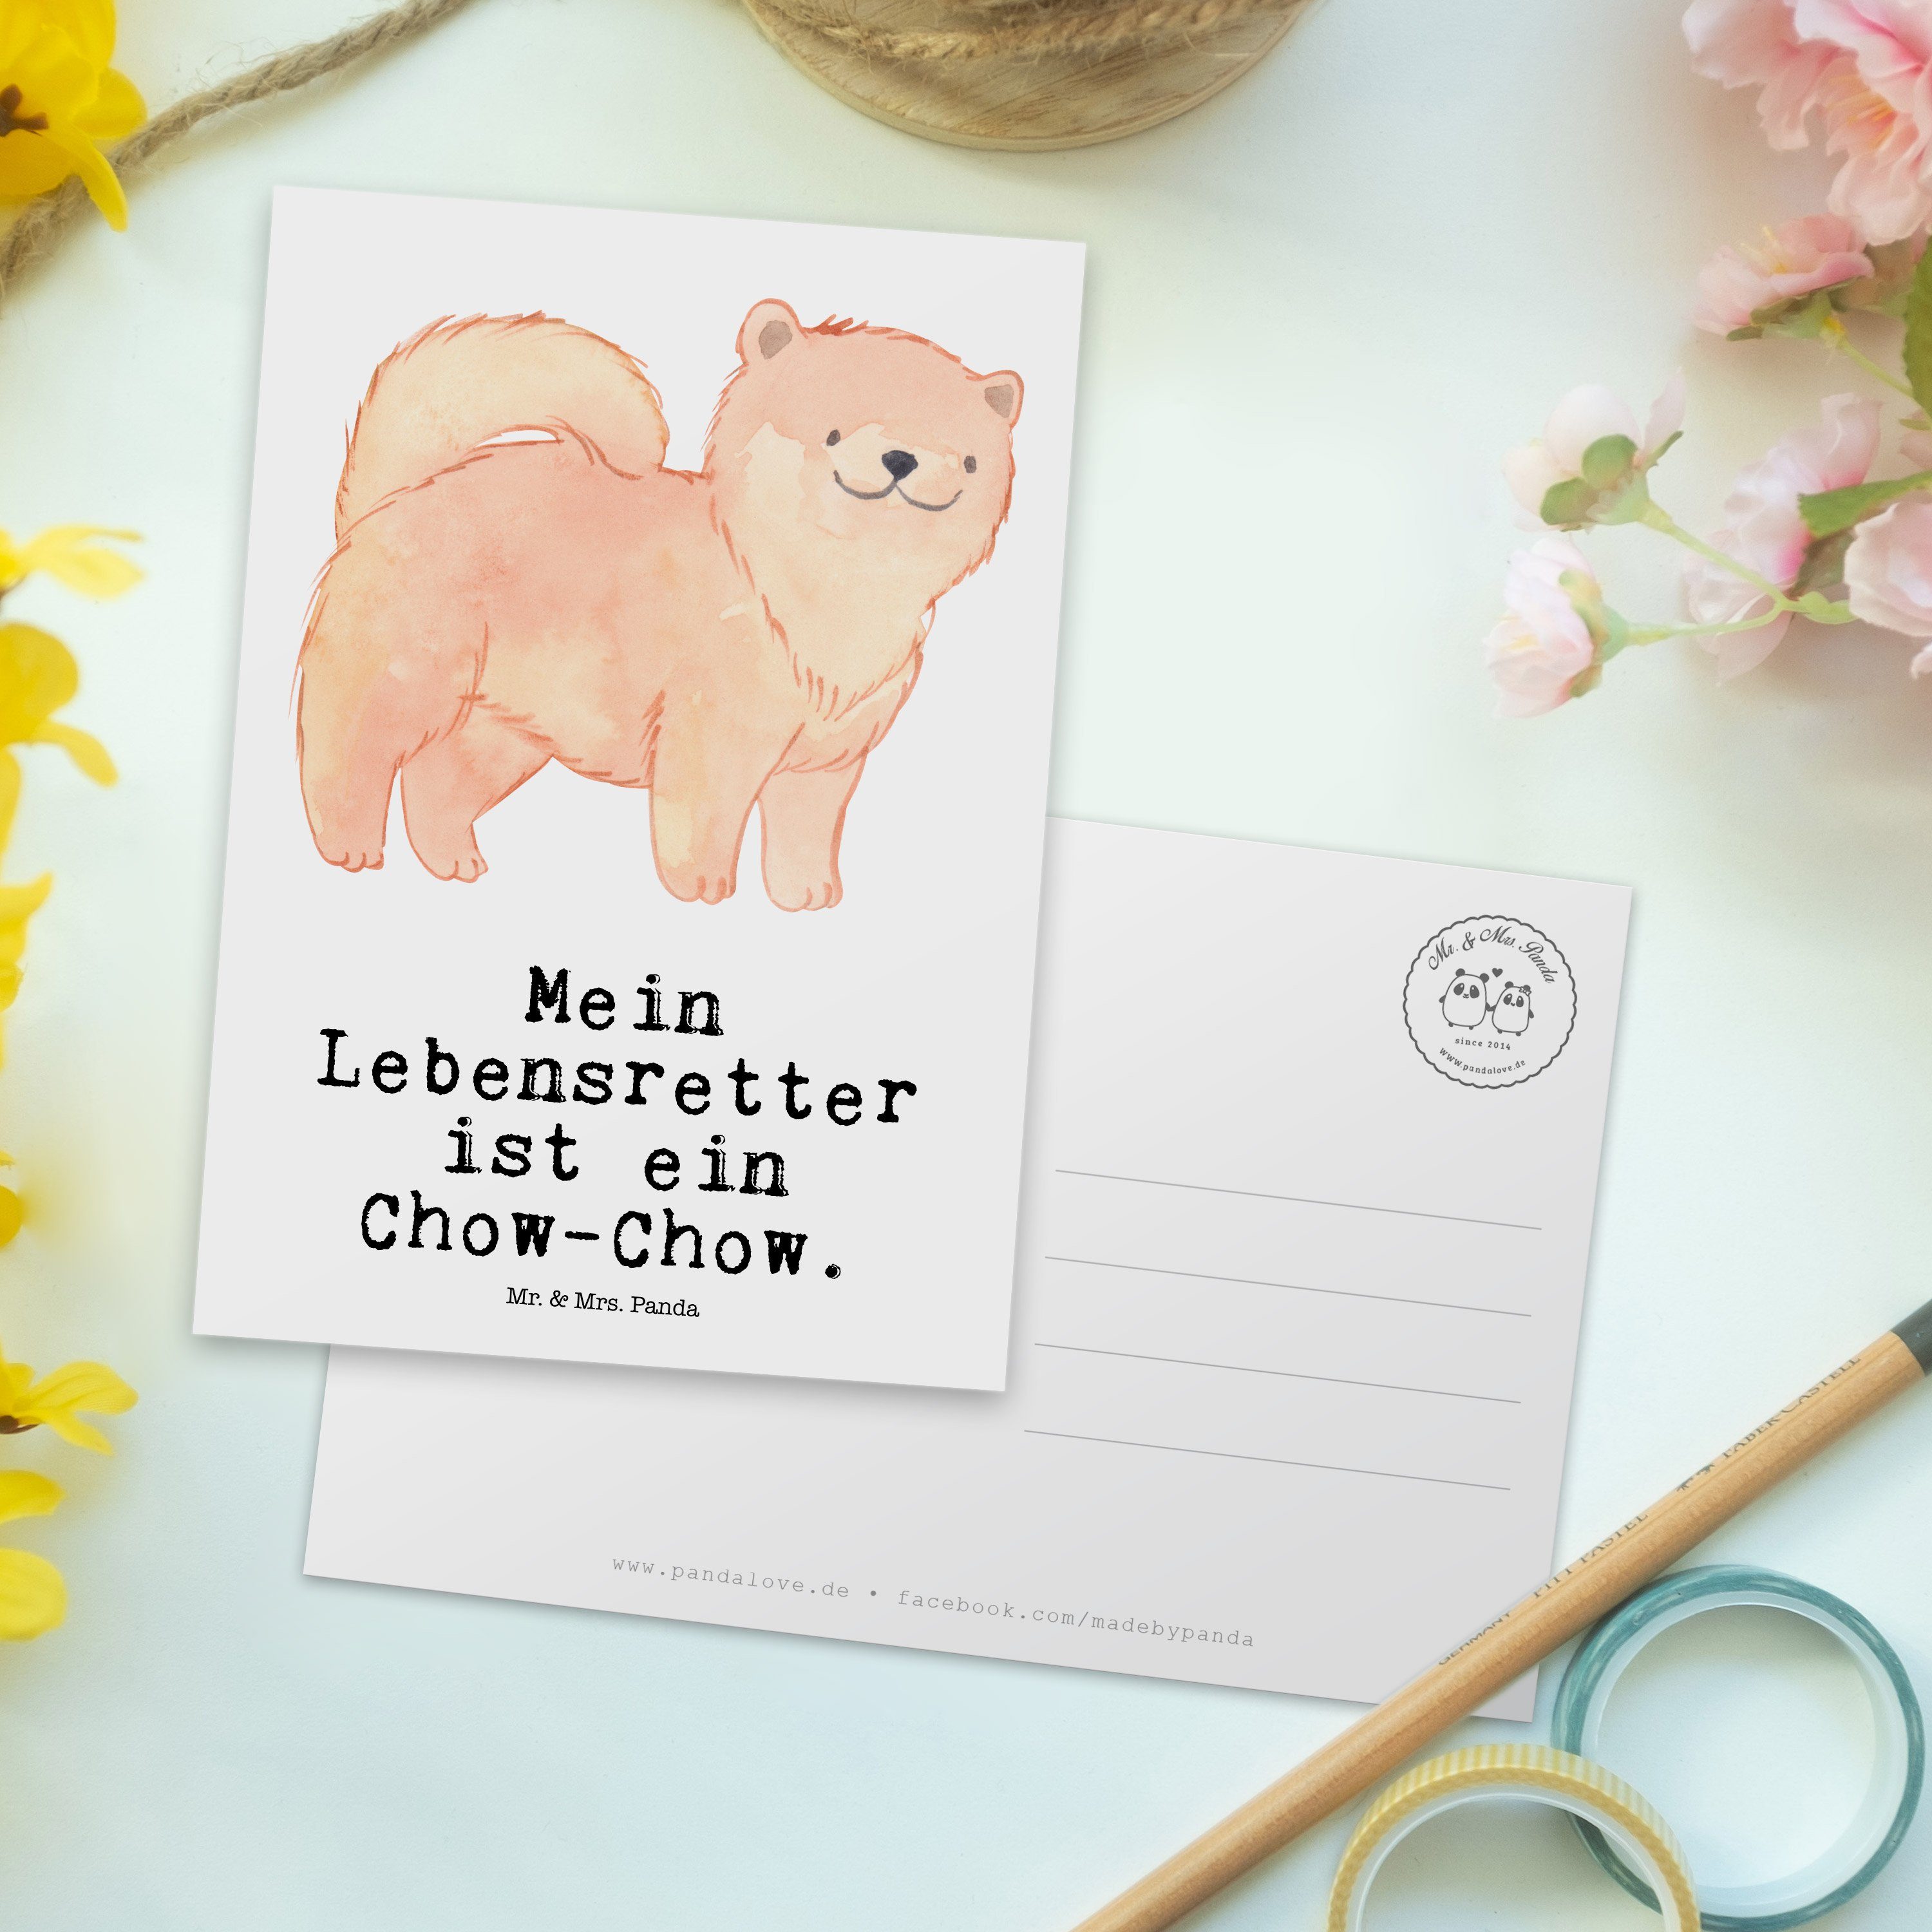 Mr. & Geschenk, Mrs. - Panda Postkarte Sche Hund, Chow-Chow Lebensretter - Einladungskarte, Weiß